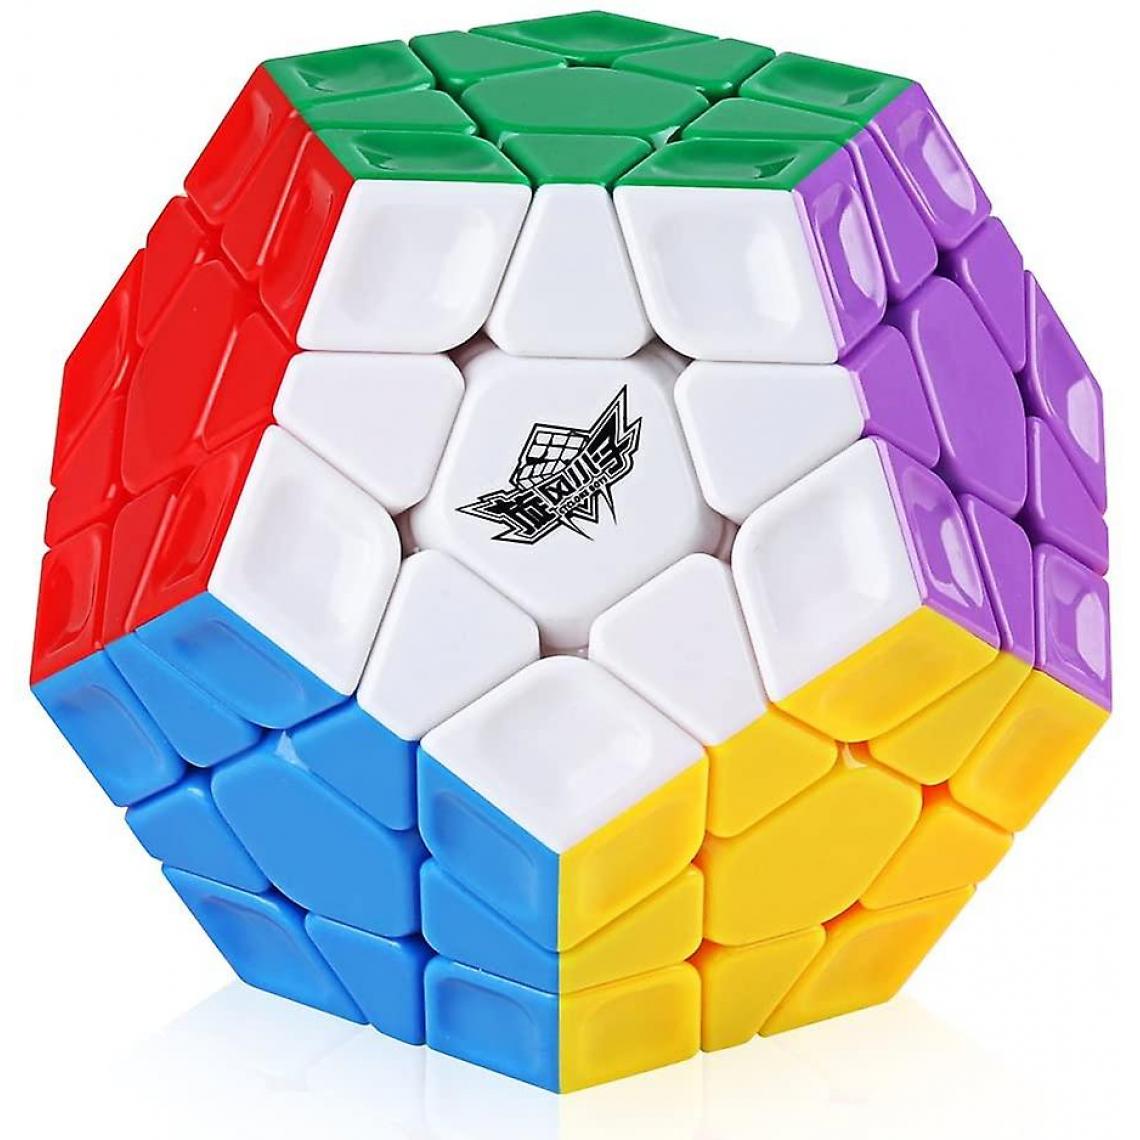 Universal - Cyclone Boy 3x3 sans oreille vitesse cube pentagonal 12 lingots puzzle bidimensionnel.(Coloré) - Doudous